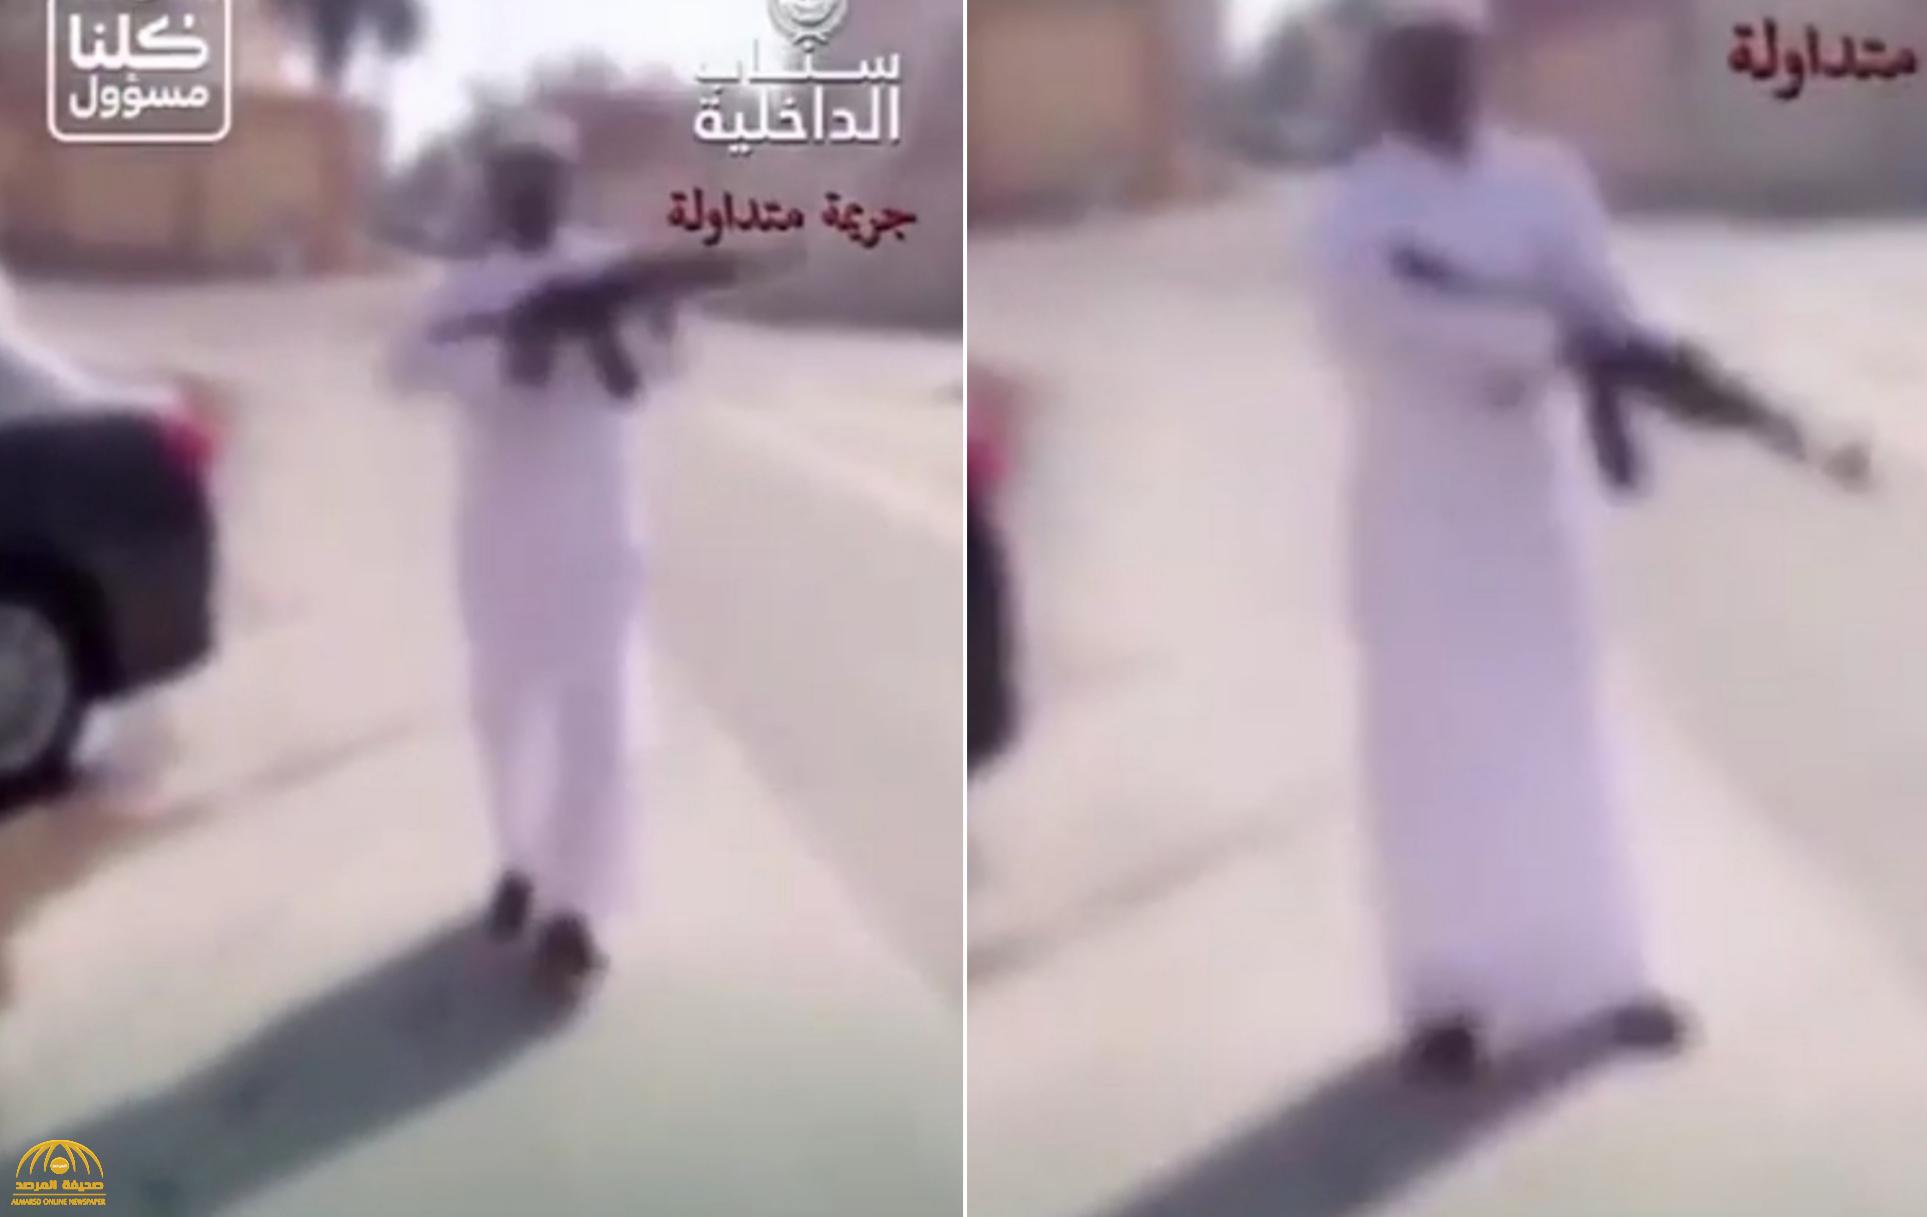 شاهد: شخص يطلق النار في الهواء بسلاح "رشاش".. وإجراء عاجل بحقه!